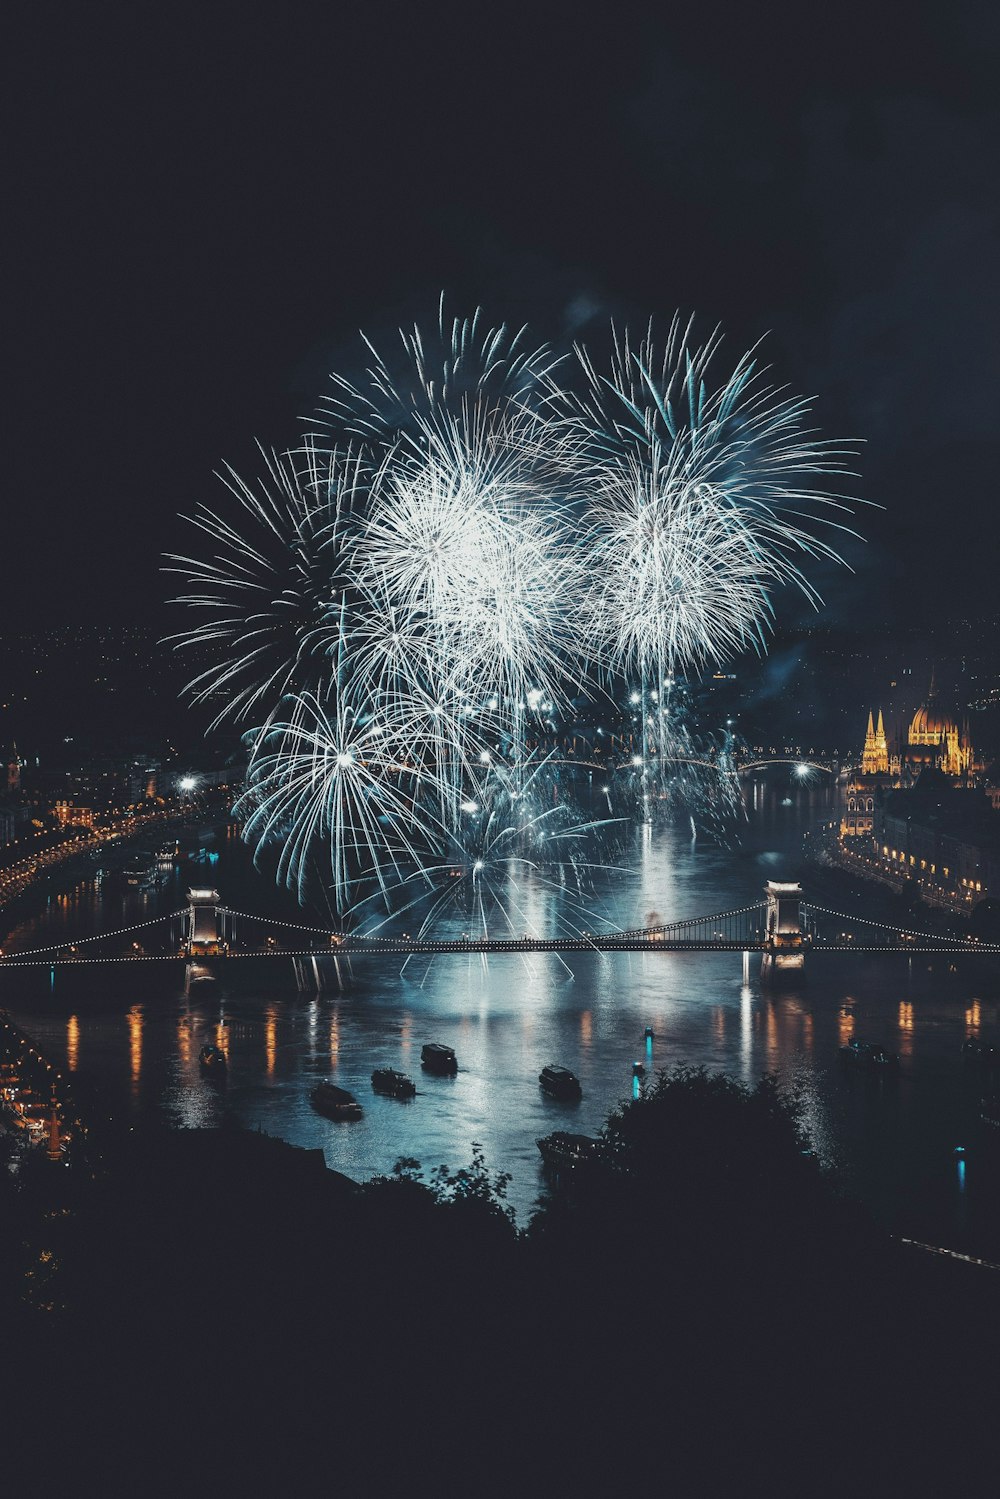 Fireworks over bridge during nighttime photo – Free Budapest Image ...